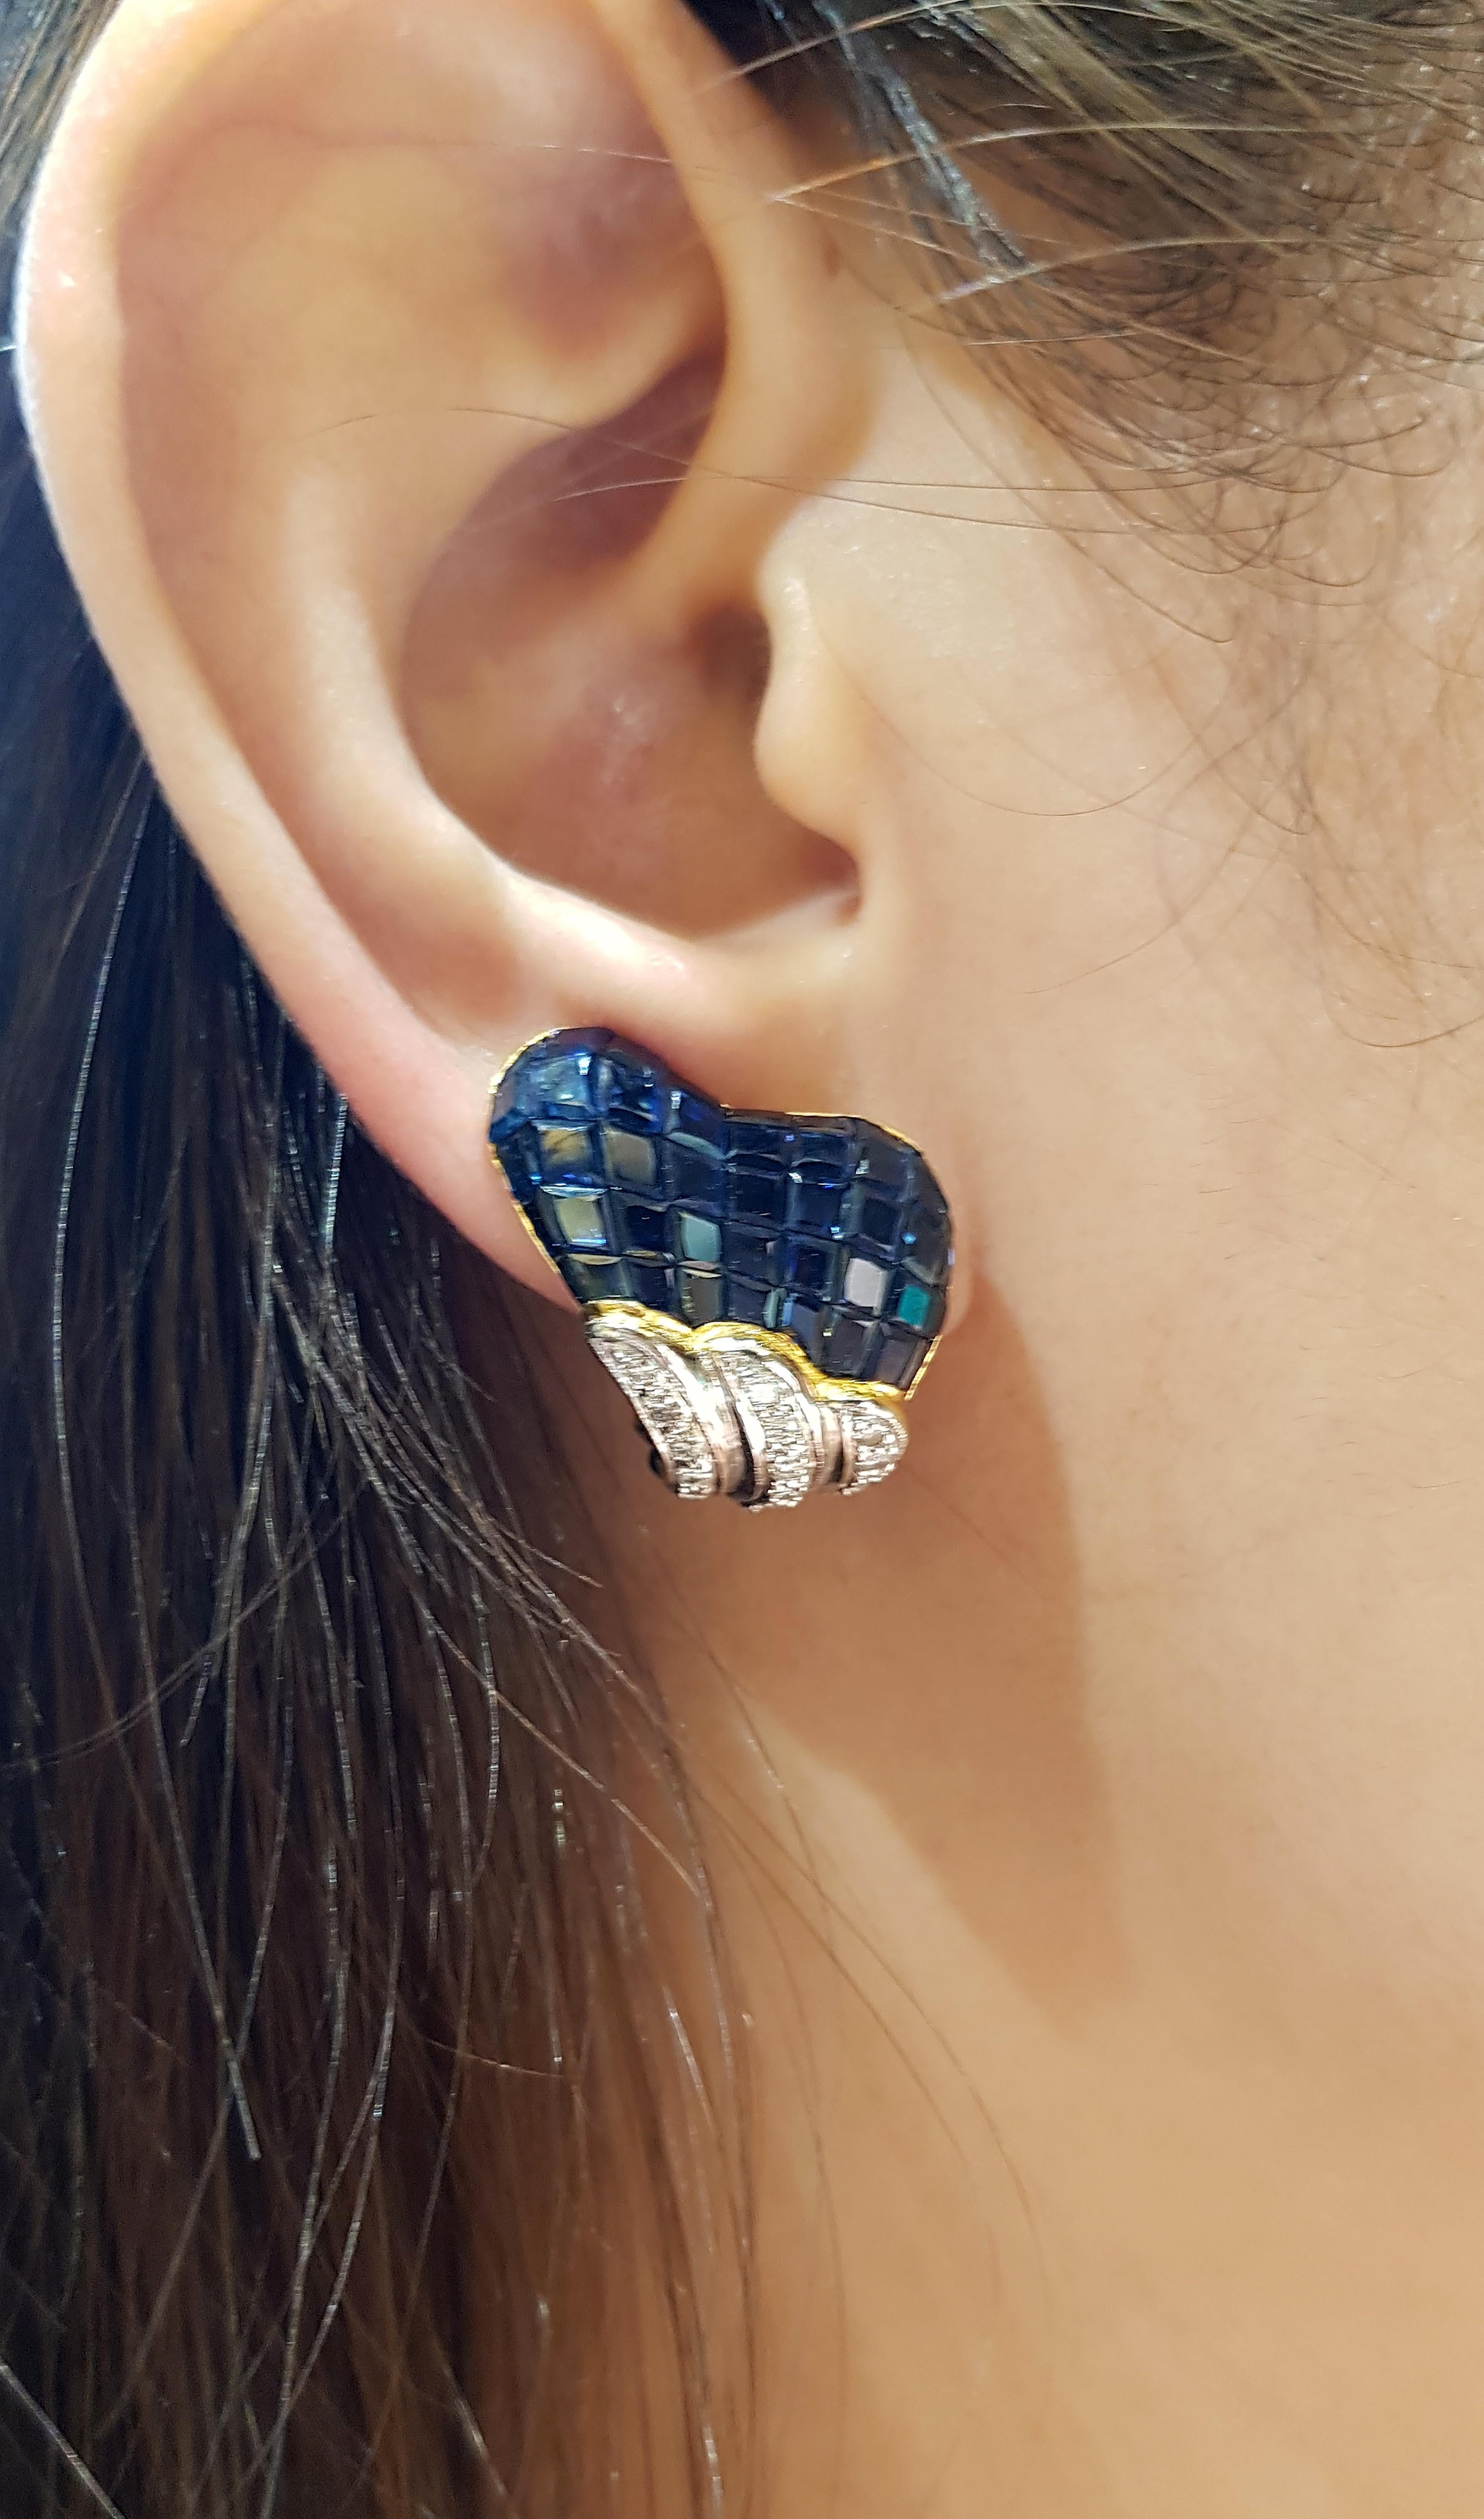 Blauer Saphir 17,59 Karat mit Diamant 0,71 Karat Ohrringe in 18 Karat Goldfassung

Breite:  2.0 cm 
Länge: 2.1 cm
Gesamtgewicht: 19,36 Gramm

